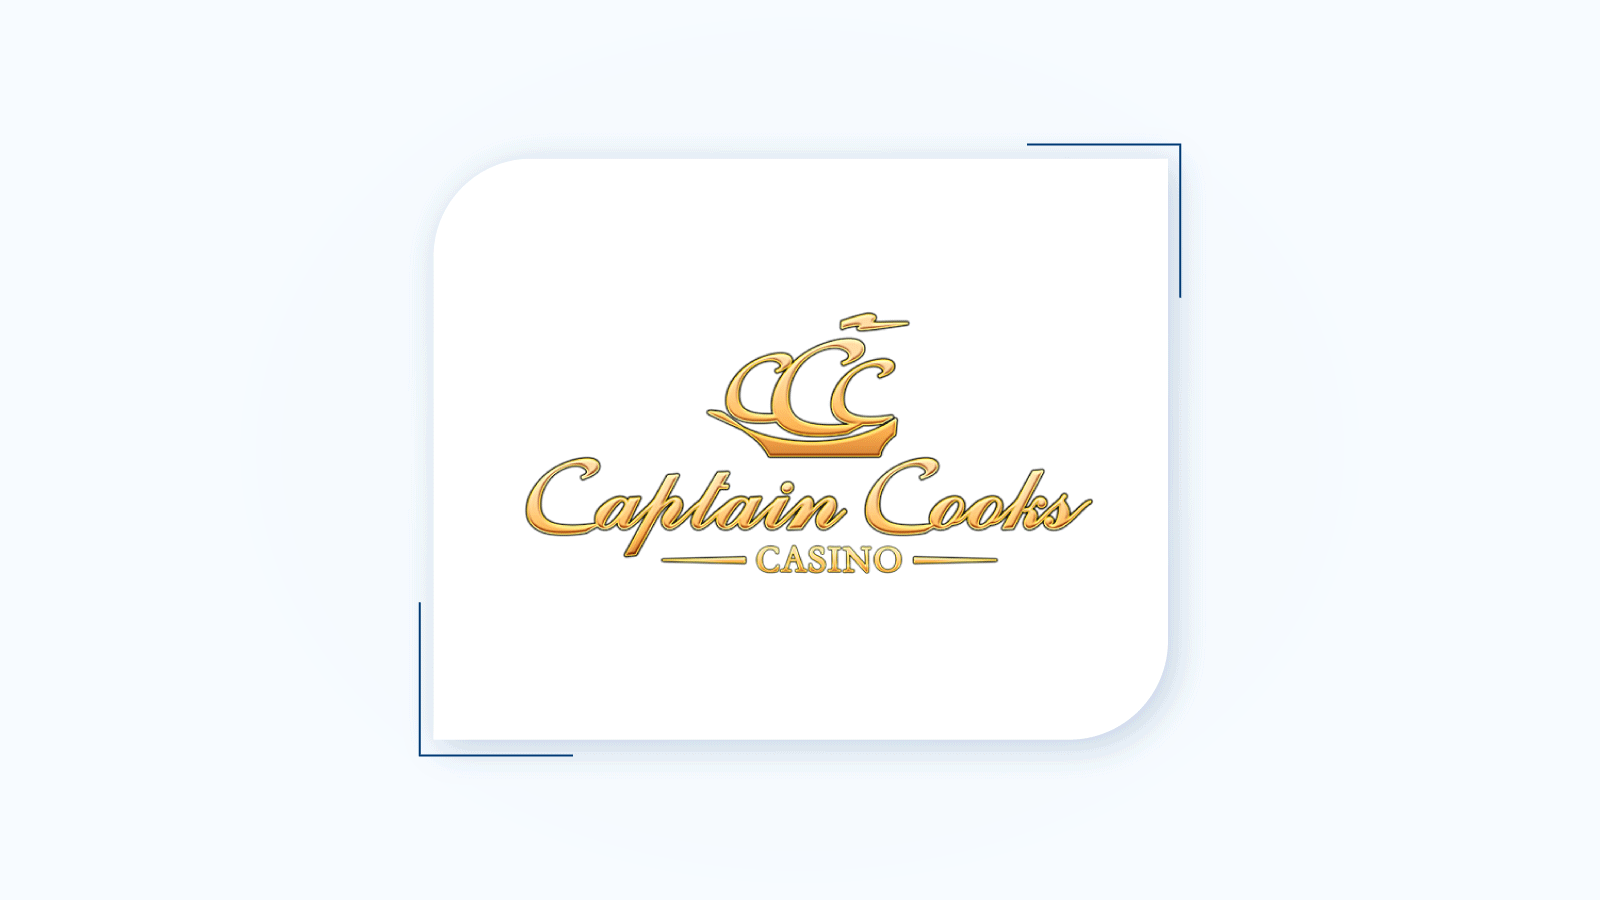 Captain Cooks best $5 deposit casino in Ontario